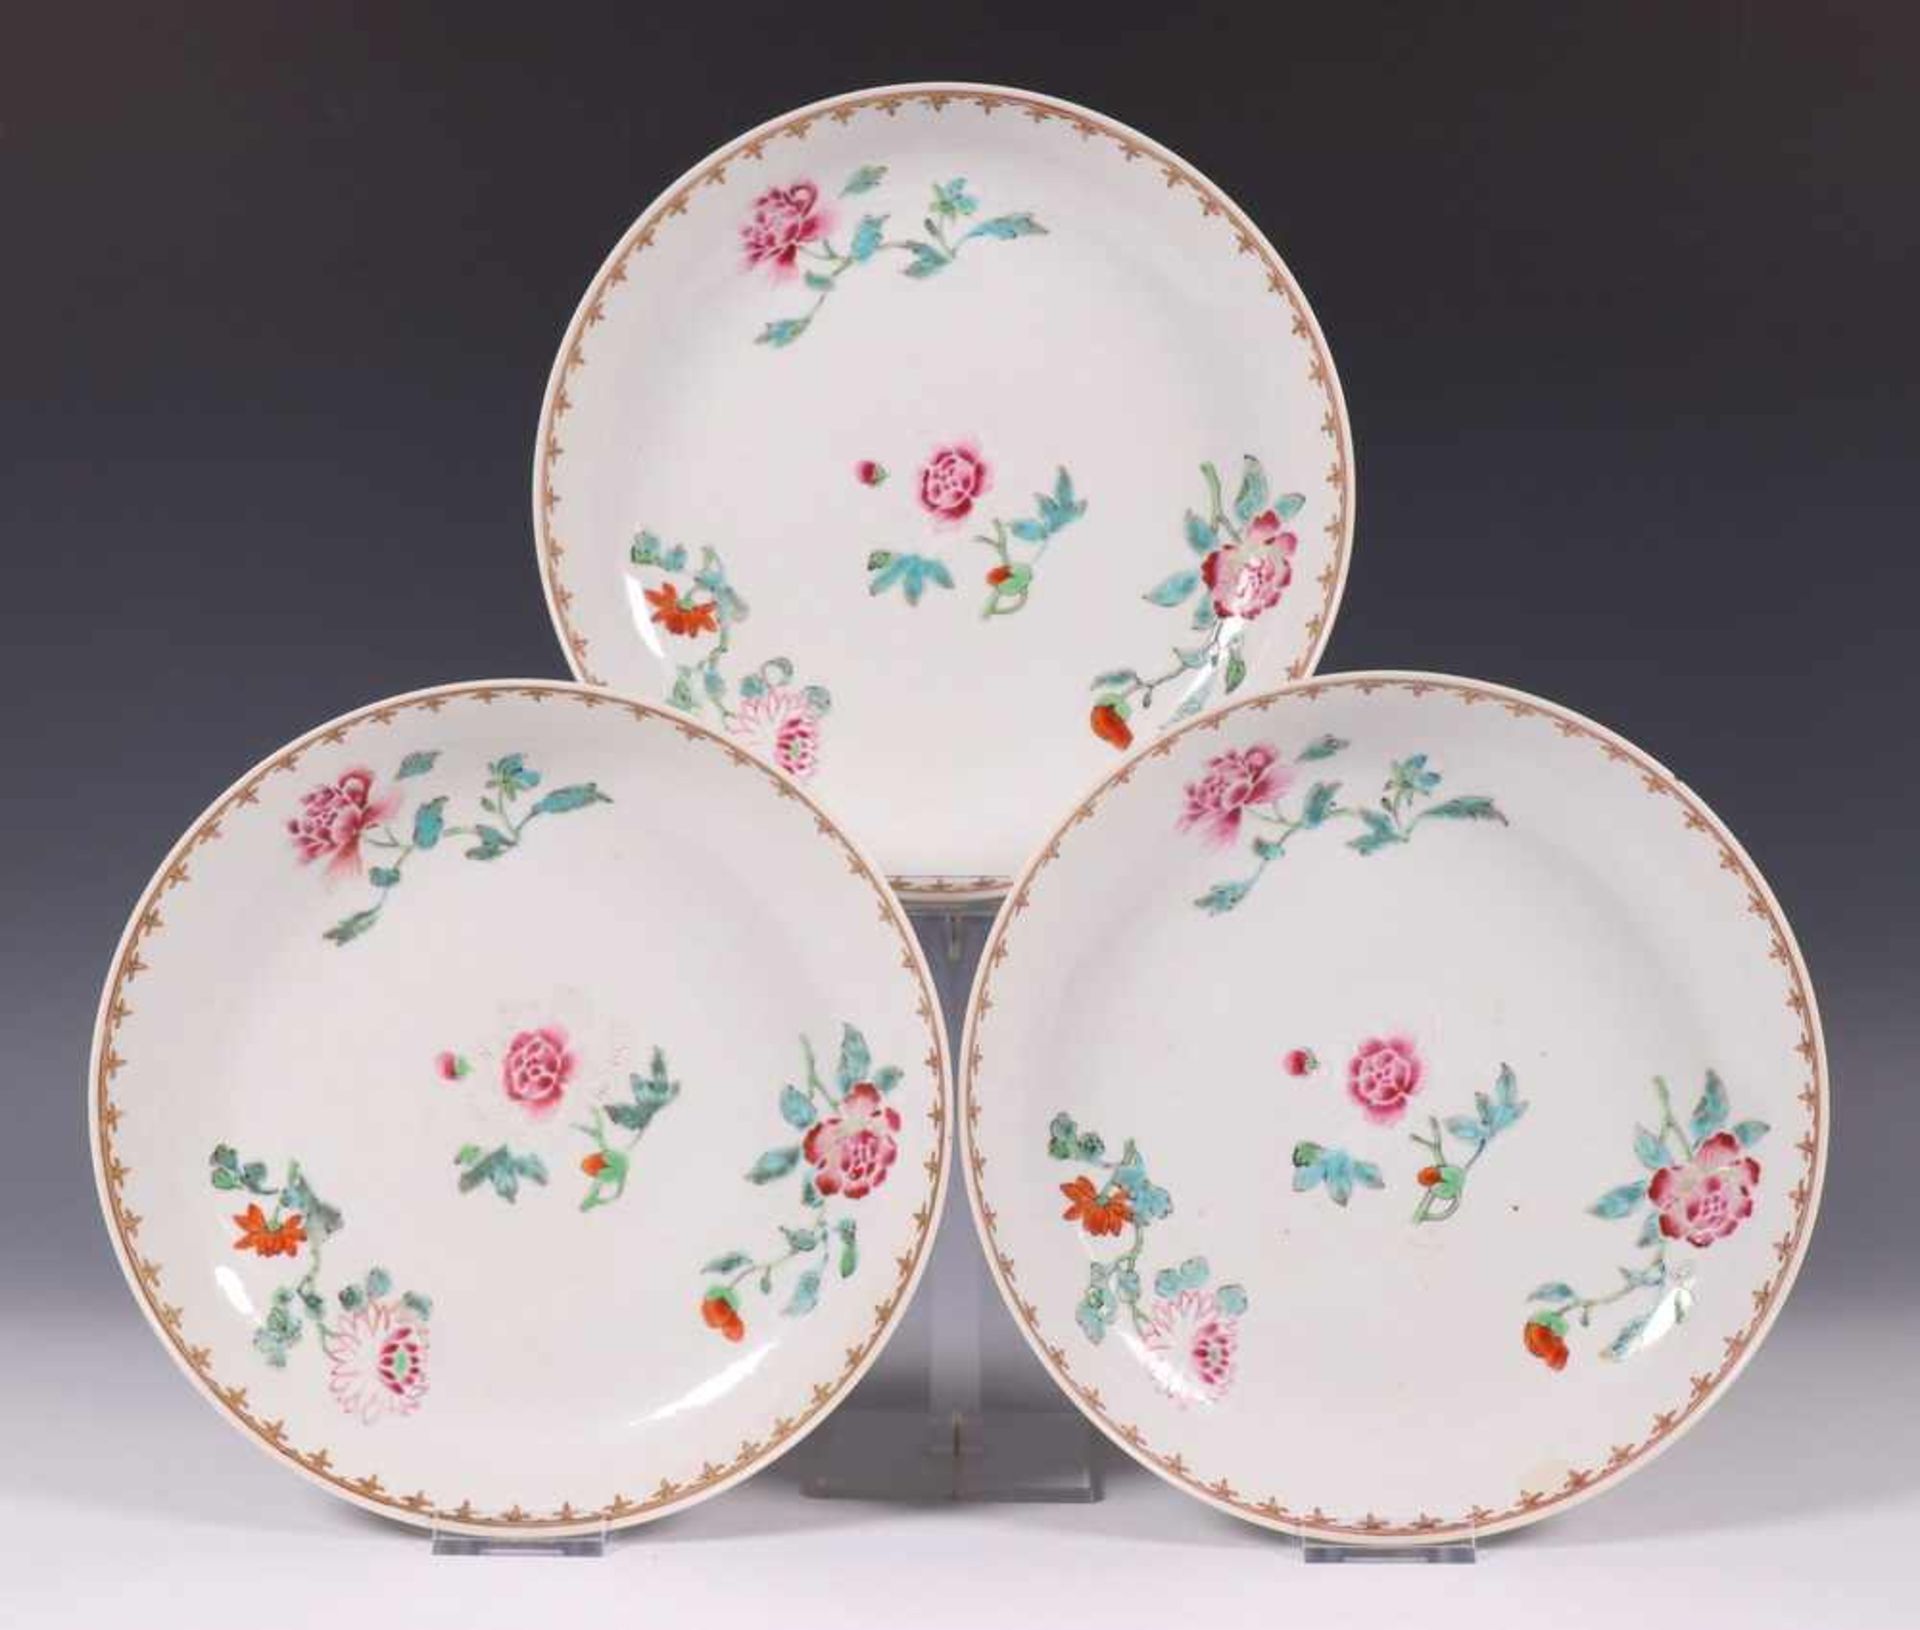 China, serie van drie dun porseleinen famille rose borden, vroeg 18e eeuw,met decor van bloesem,